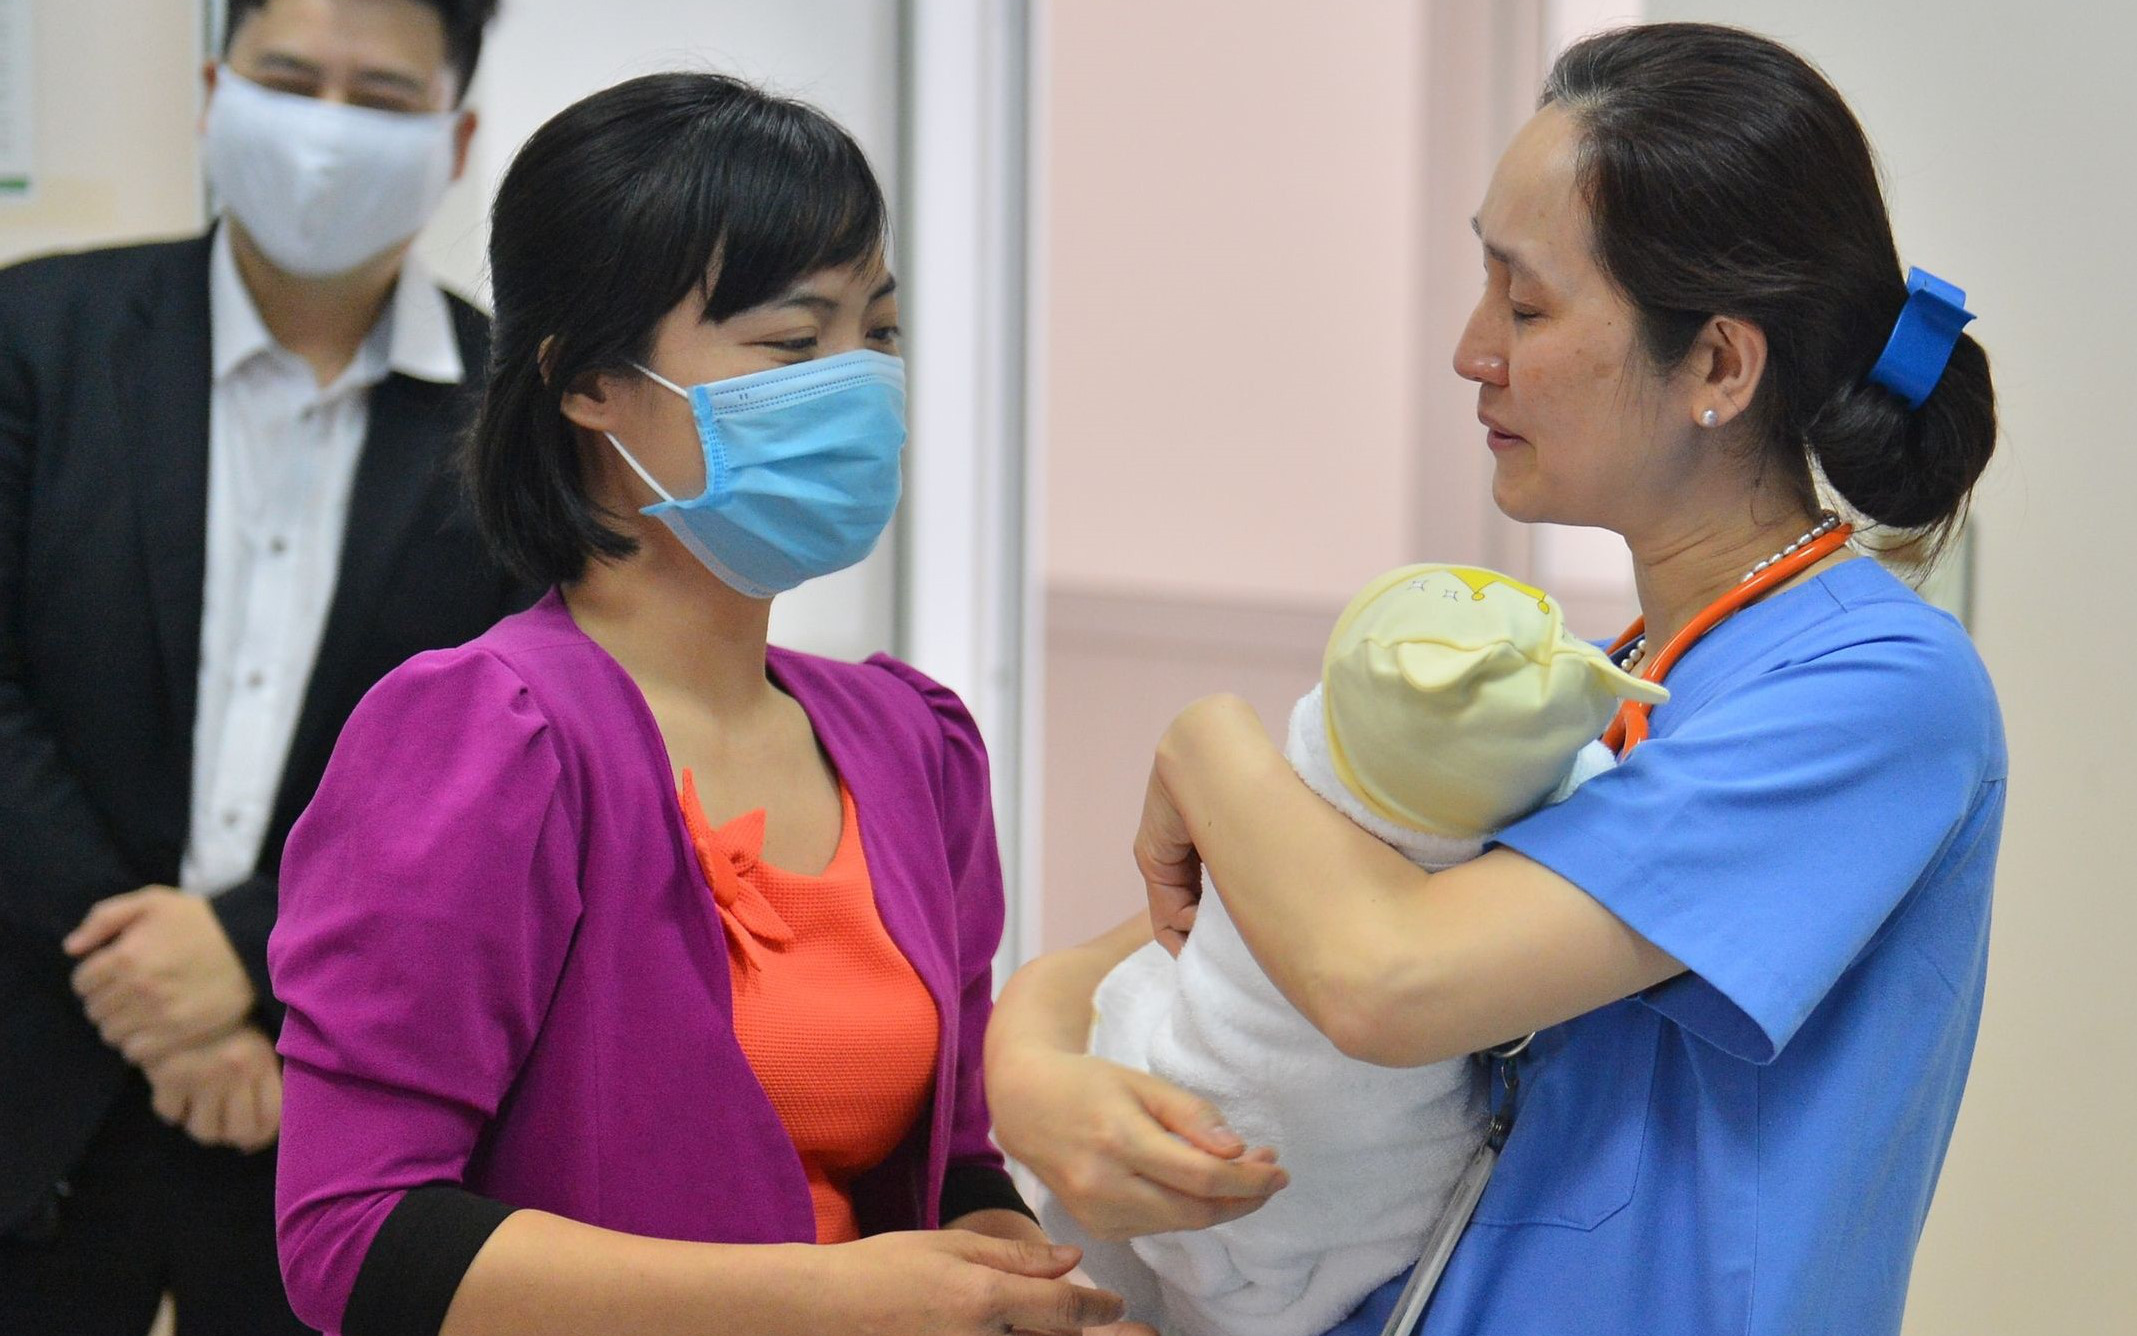 Bé trai bị bỏ rơi ngày 29 Tết ở Hà Nội đã có bố mẹ nuôi, bác sĩ bật khóc nói lời tạm biệt: "Mạnh mẽ lên con nhé!"